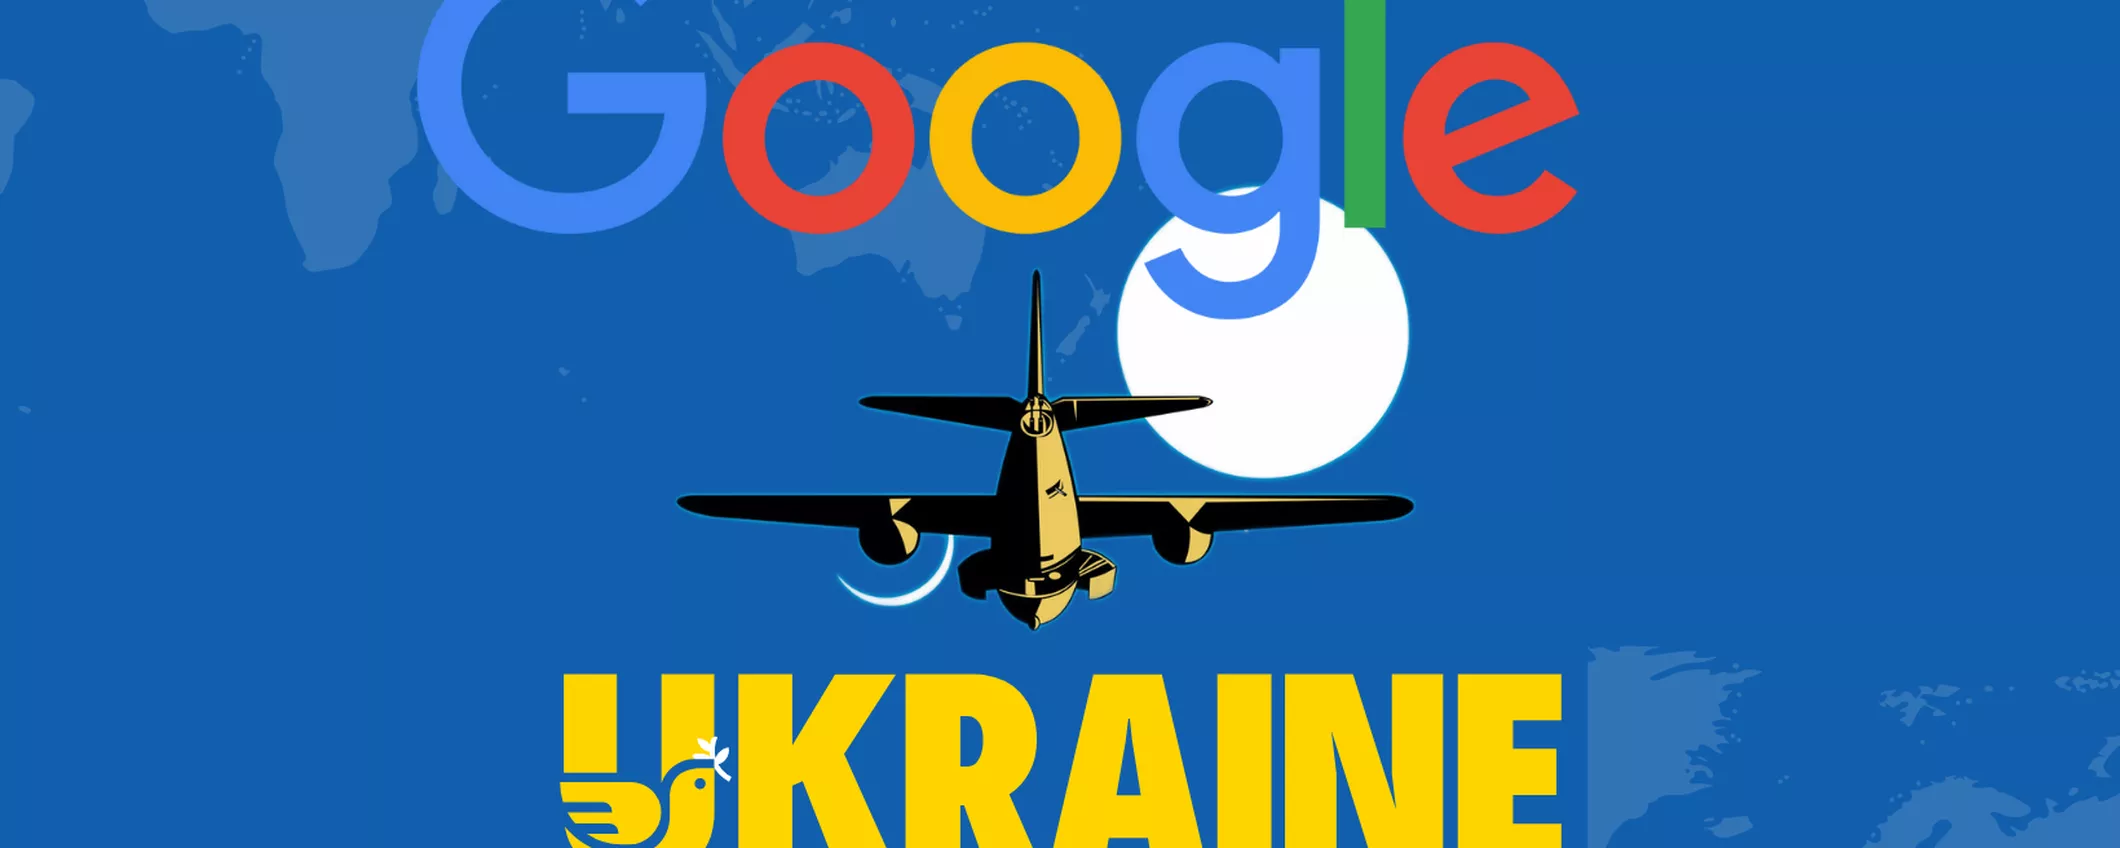 Ucraina, Google segnalerà gli attacchi aerei russi ai device Android ucraini